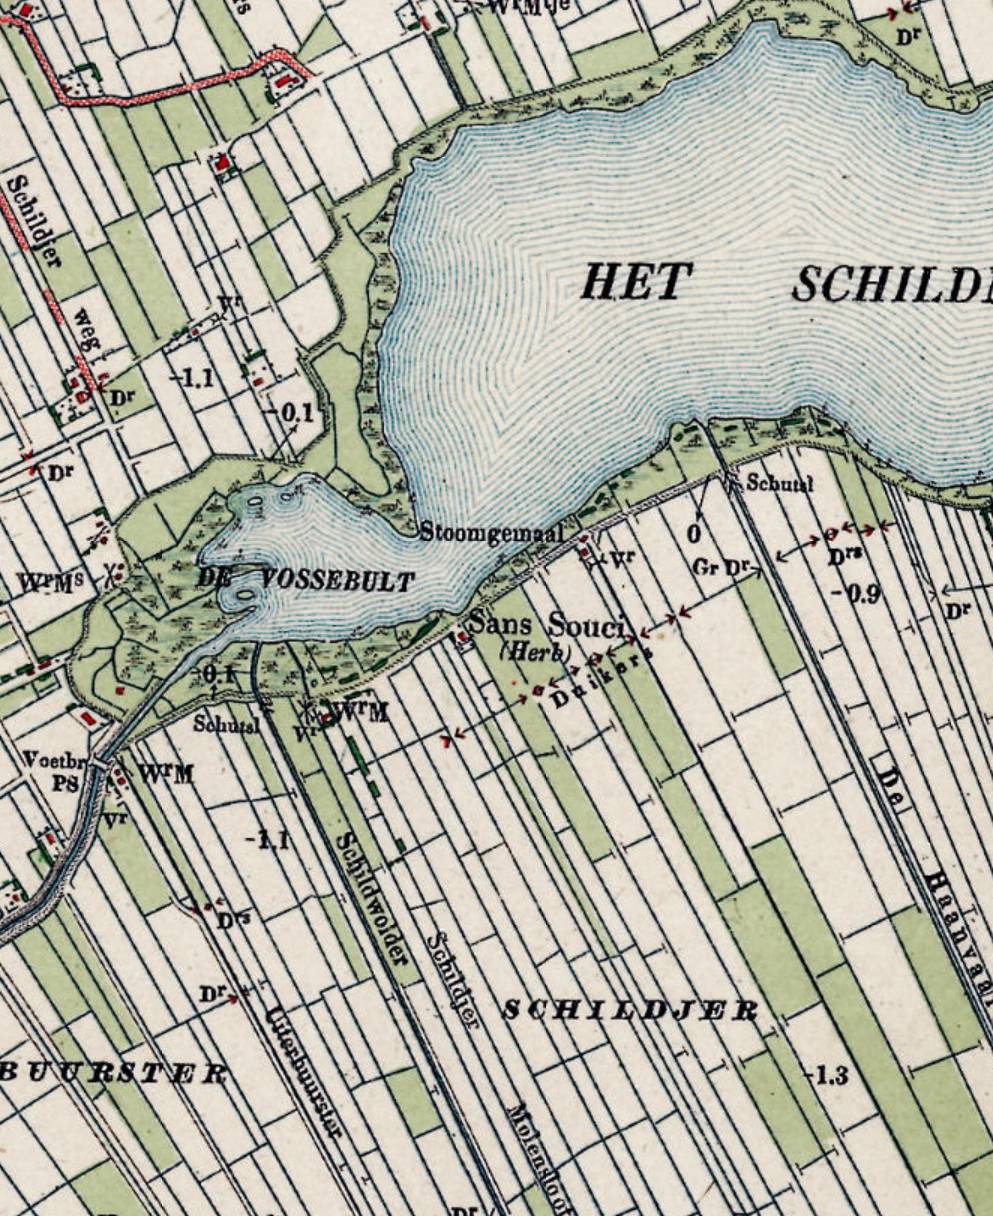 Sans Souci op de kaart in 1911. Op eerdere kaarten stond nog 'Heerenhuis'.